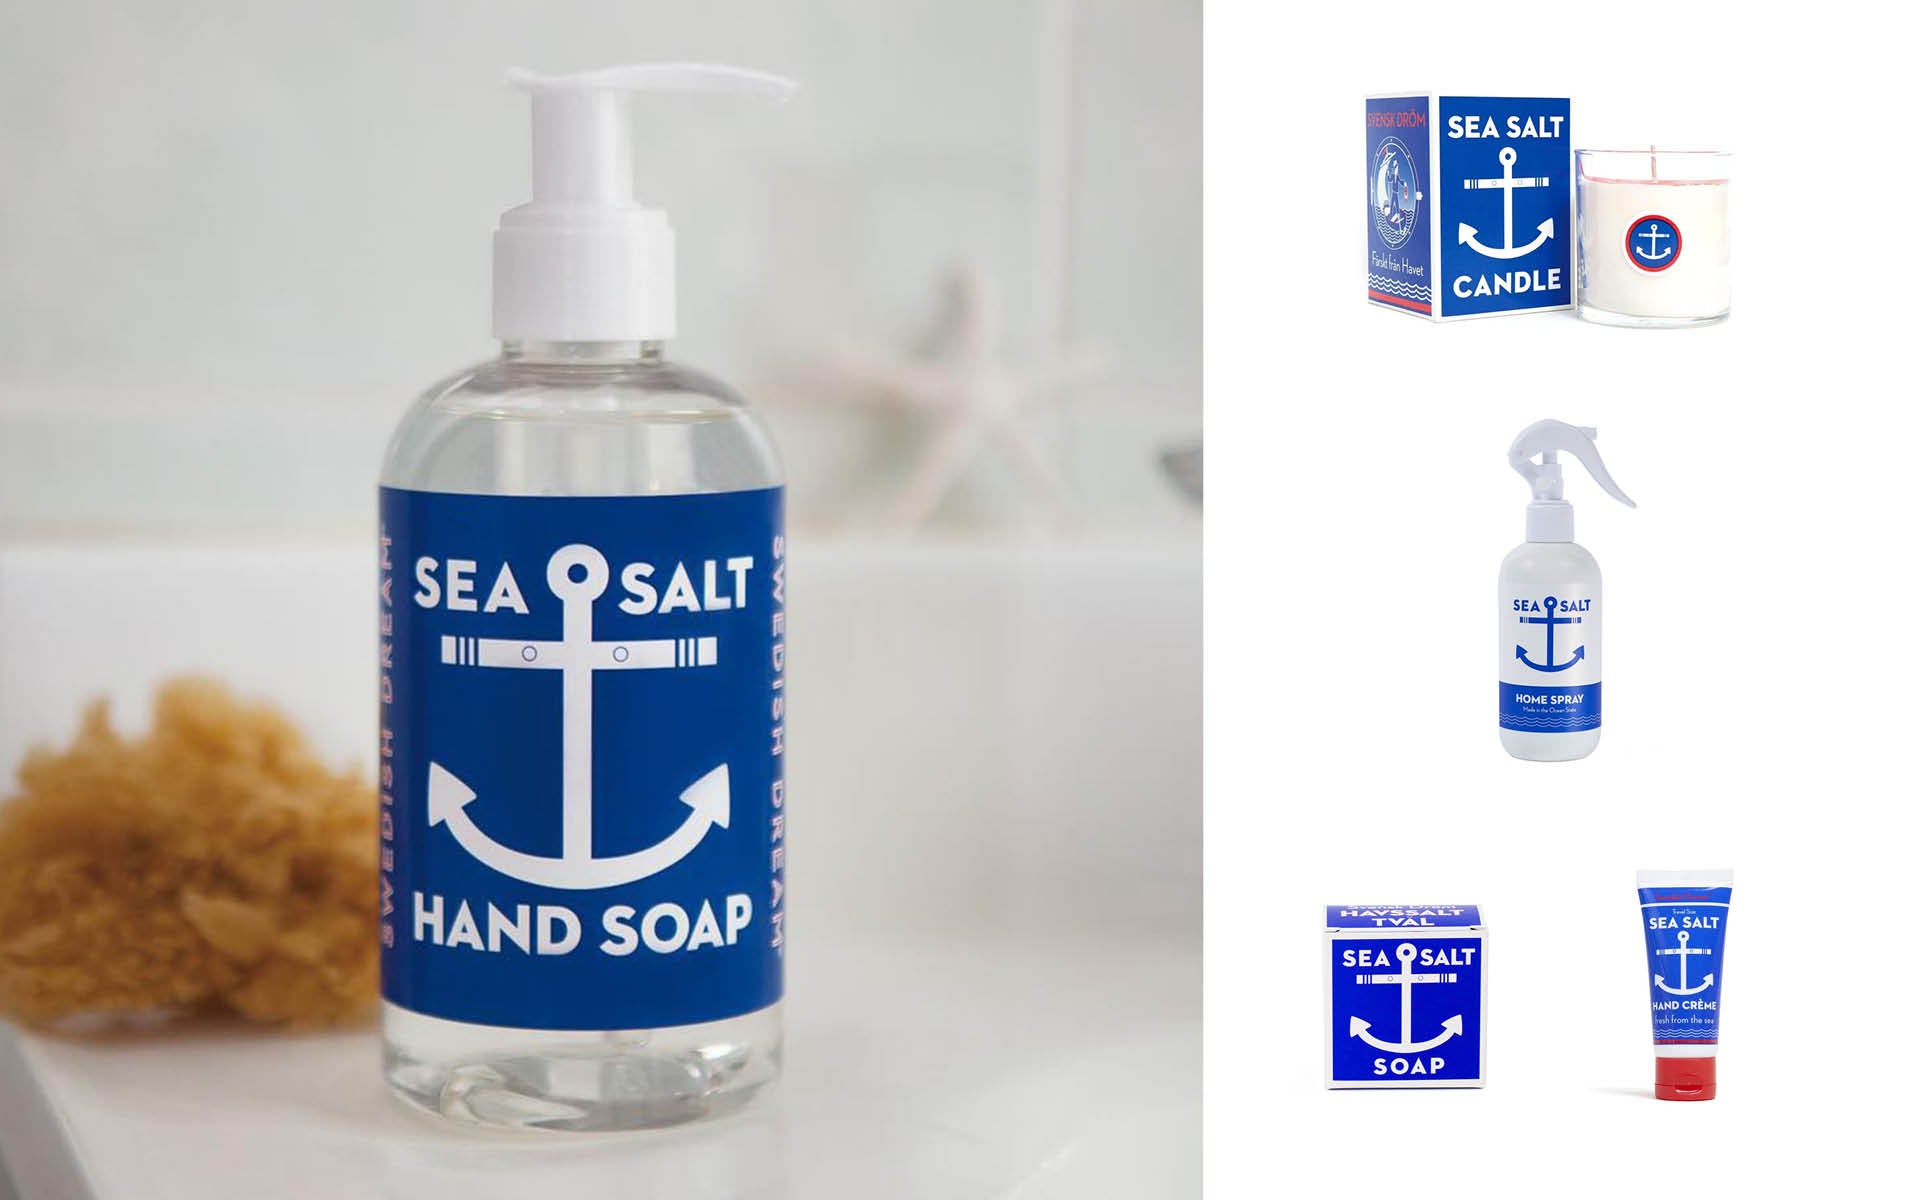 sea salt range from saison featured handwash, moisturises, room sprays, seaweed candles and sea salt candles